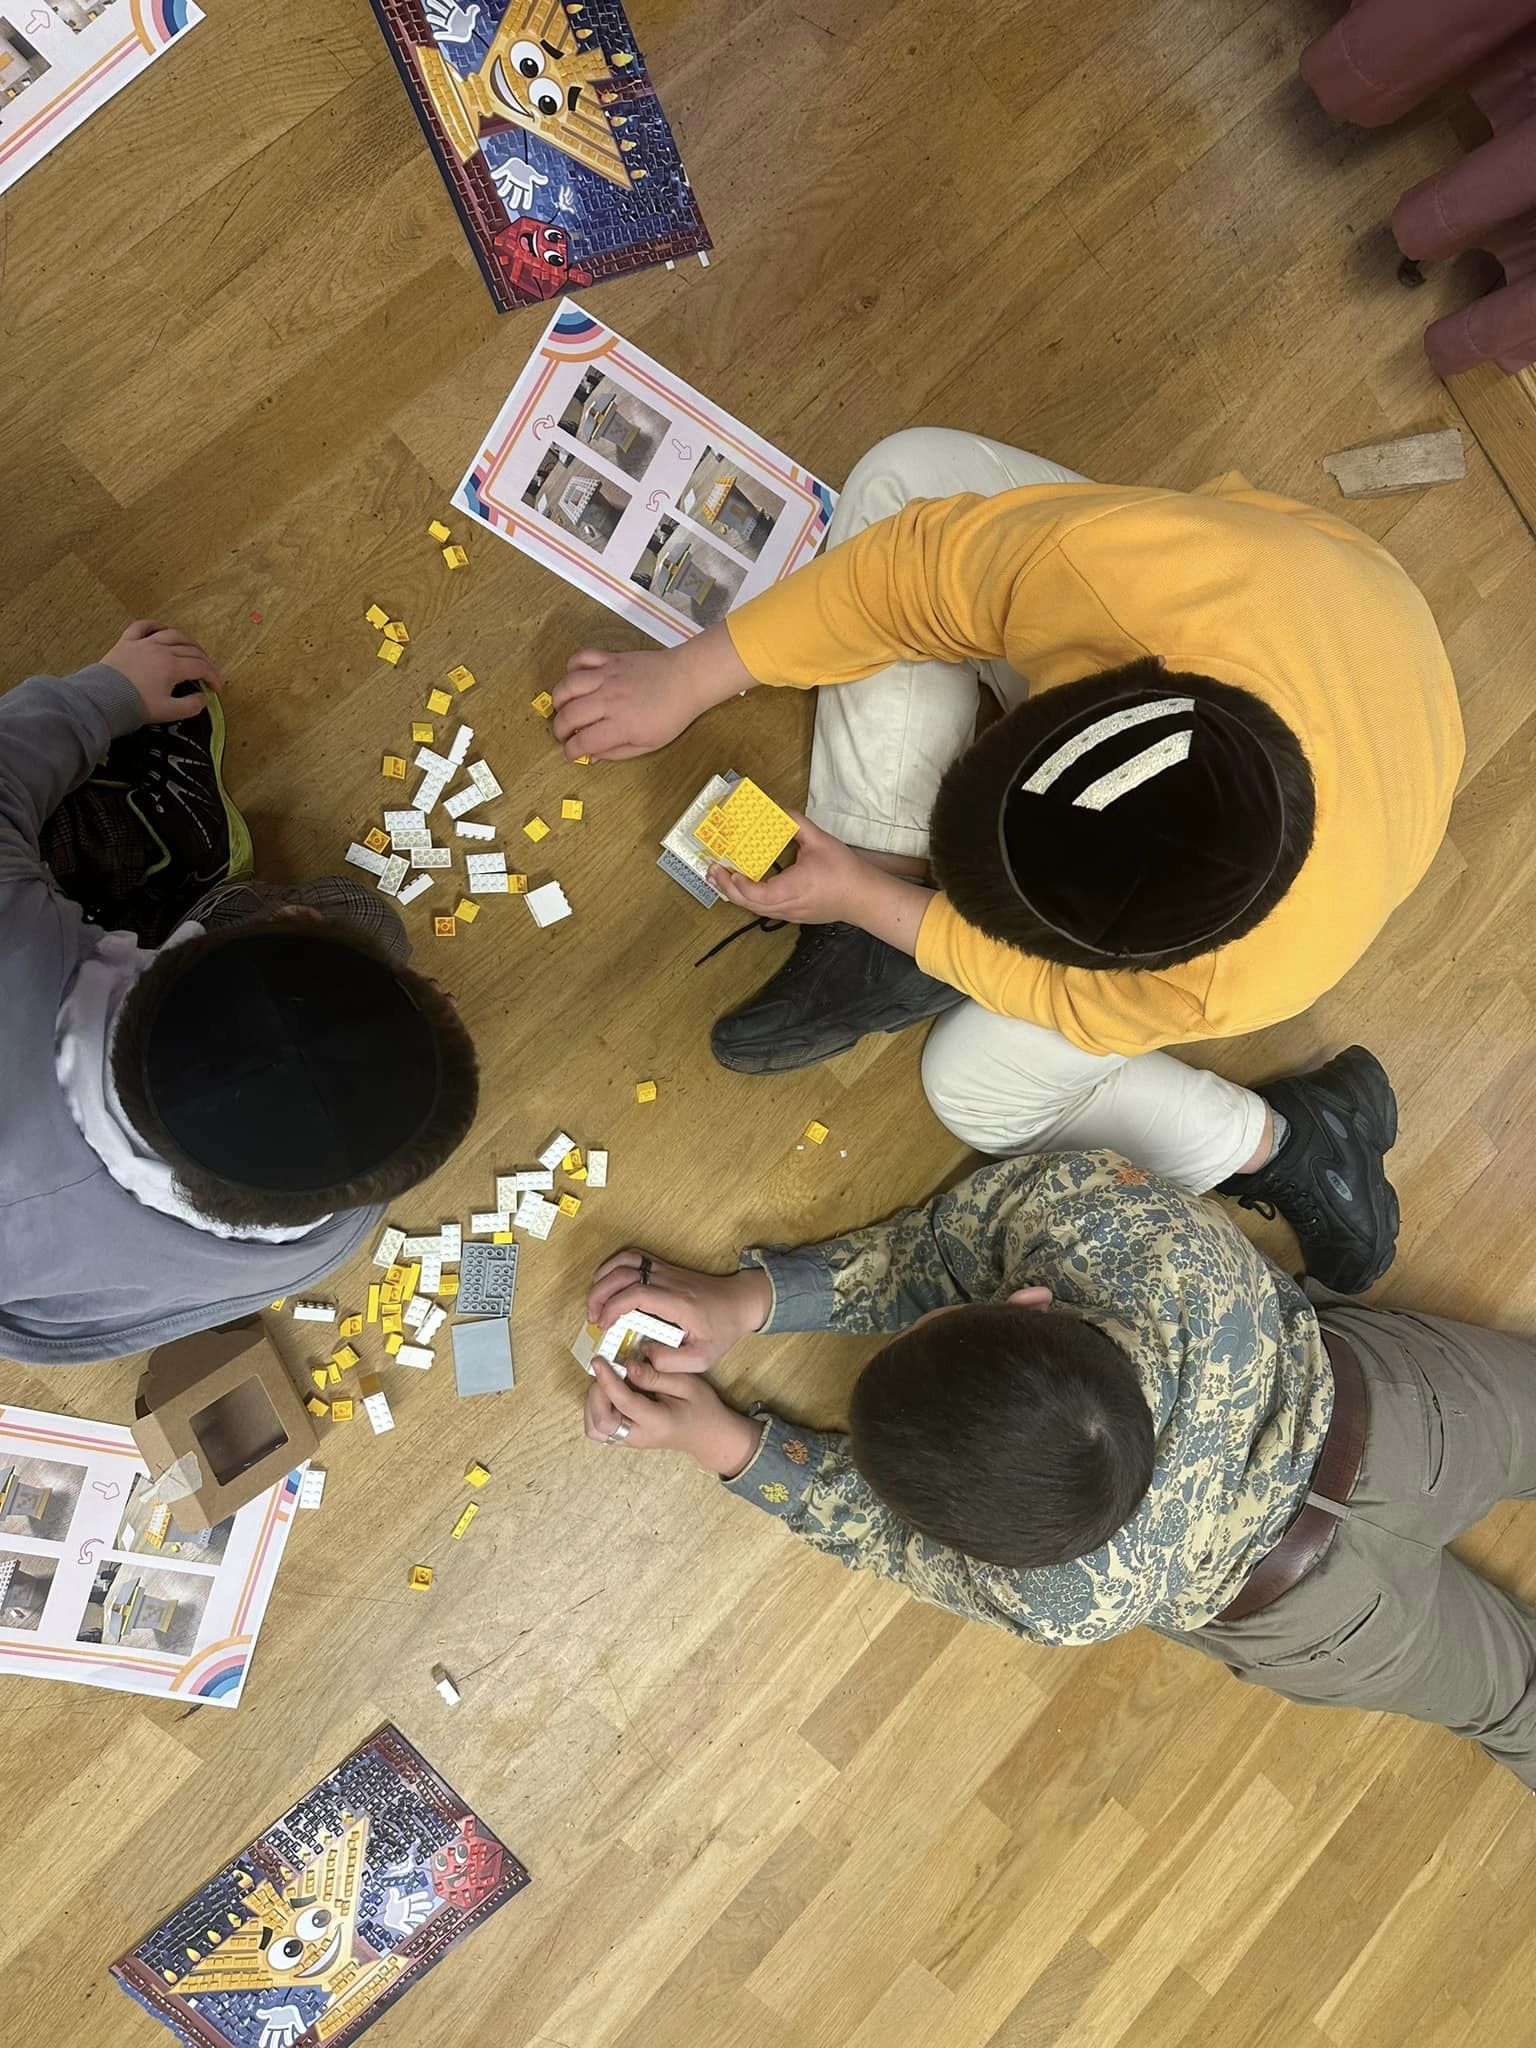 Kinder der Gemeinde Baden-Baden lernen auf spielerische Weise die jüdischen Traditionen kennen. So können sie mit Lego-Sets Gegenstände wie eine Spendenbox oder einen Chanukka-Leuchter nachbauen [Quelle: Israelitische Kultusgemeinde Baden-Baden]